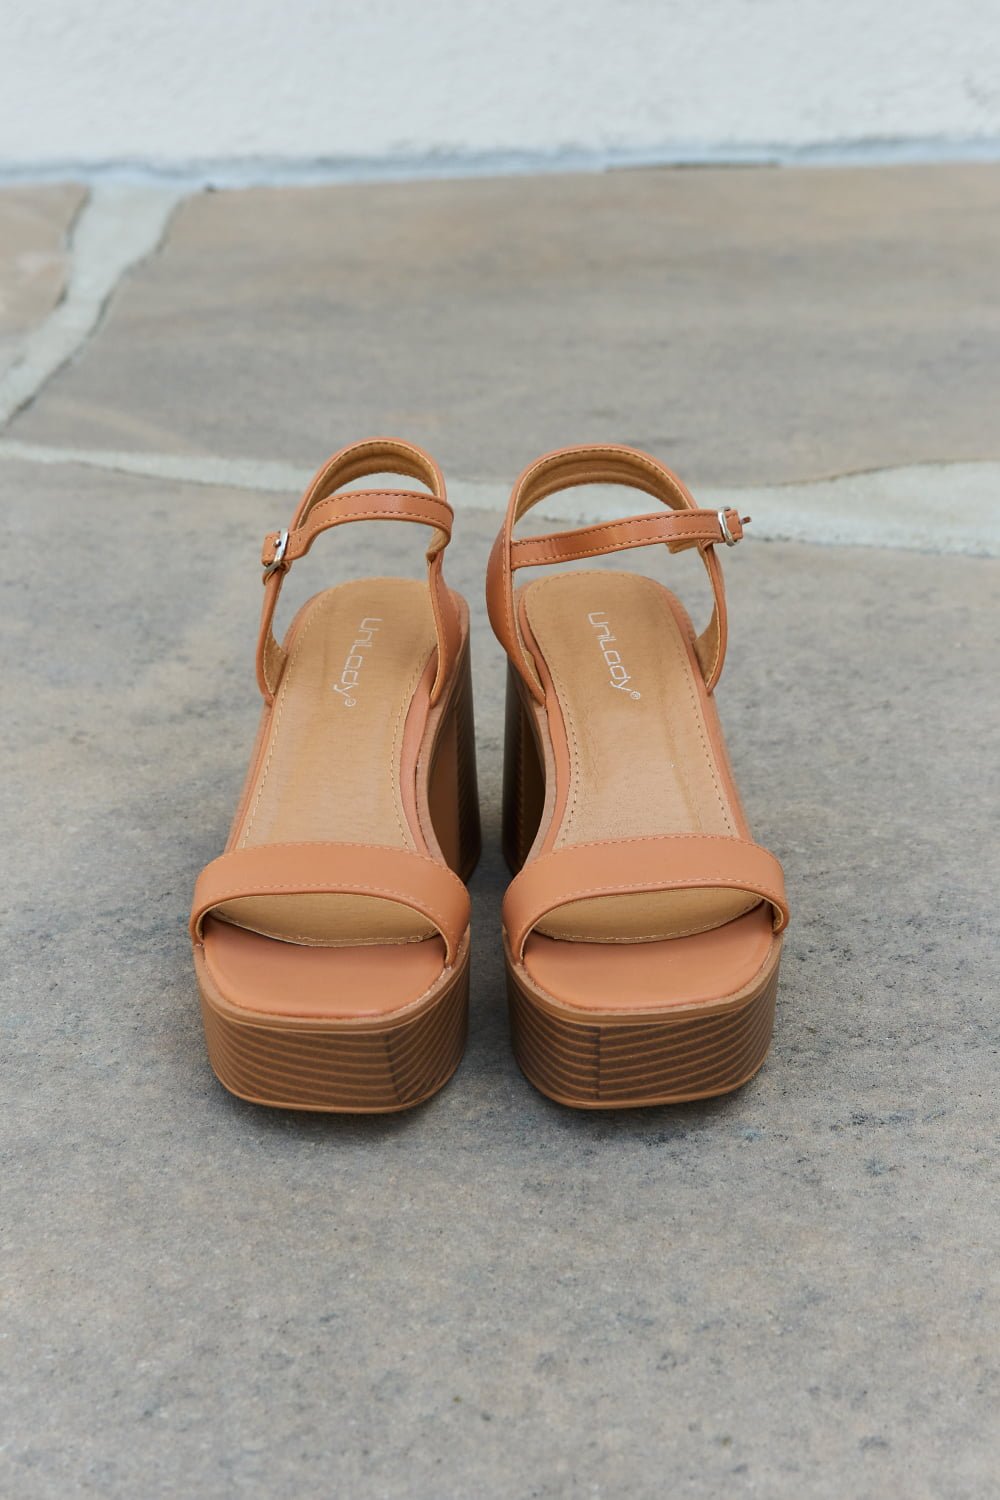 Vegan Leather Platform Heel Sandals in CognacSandalsWeeboo